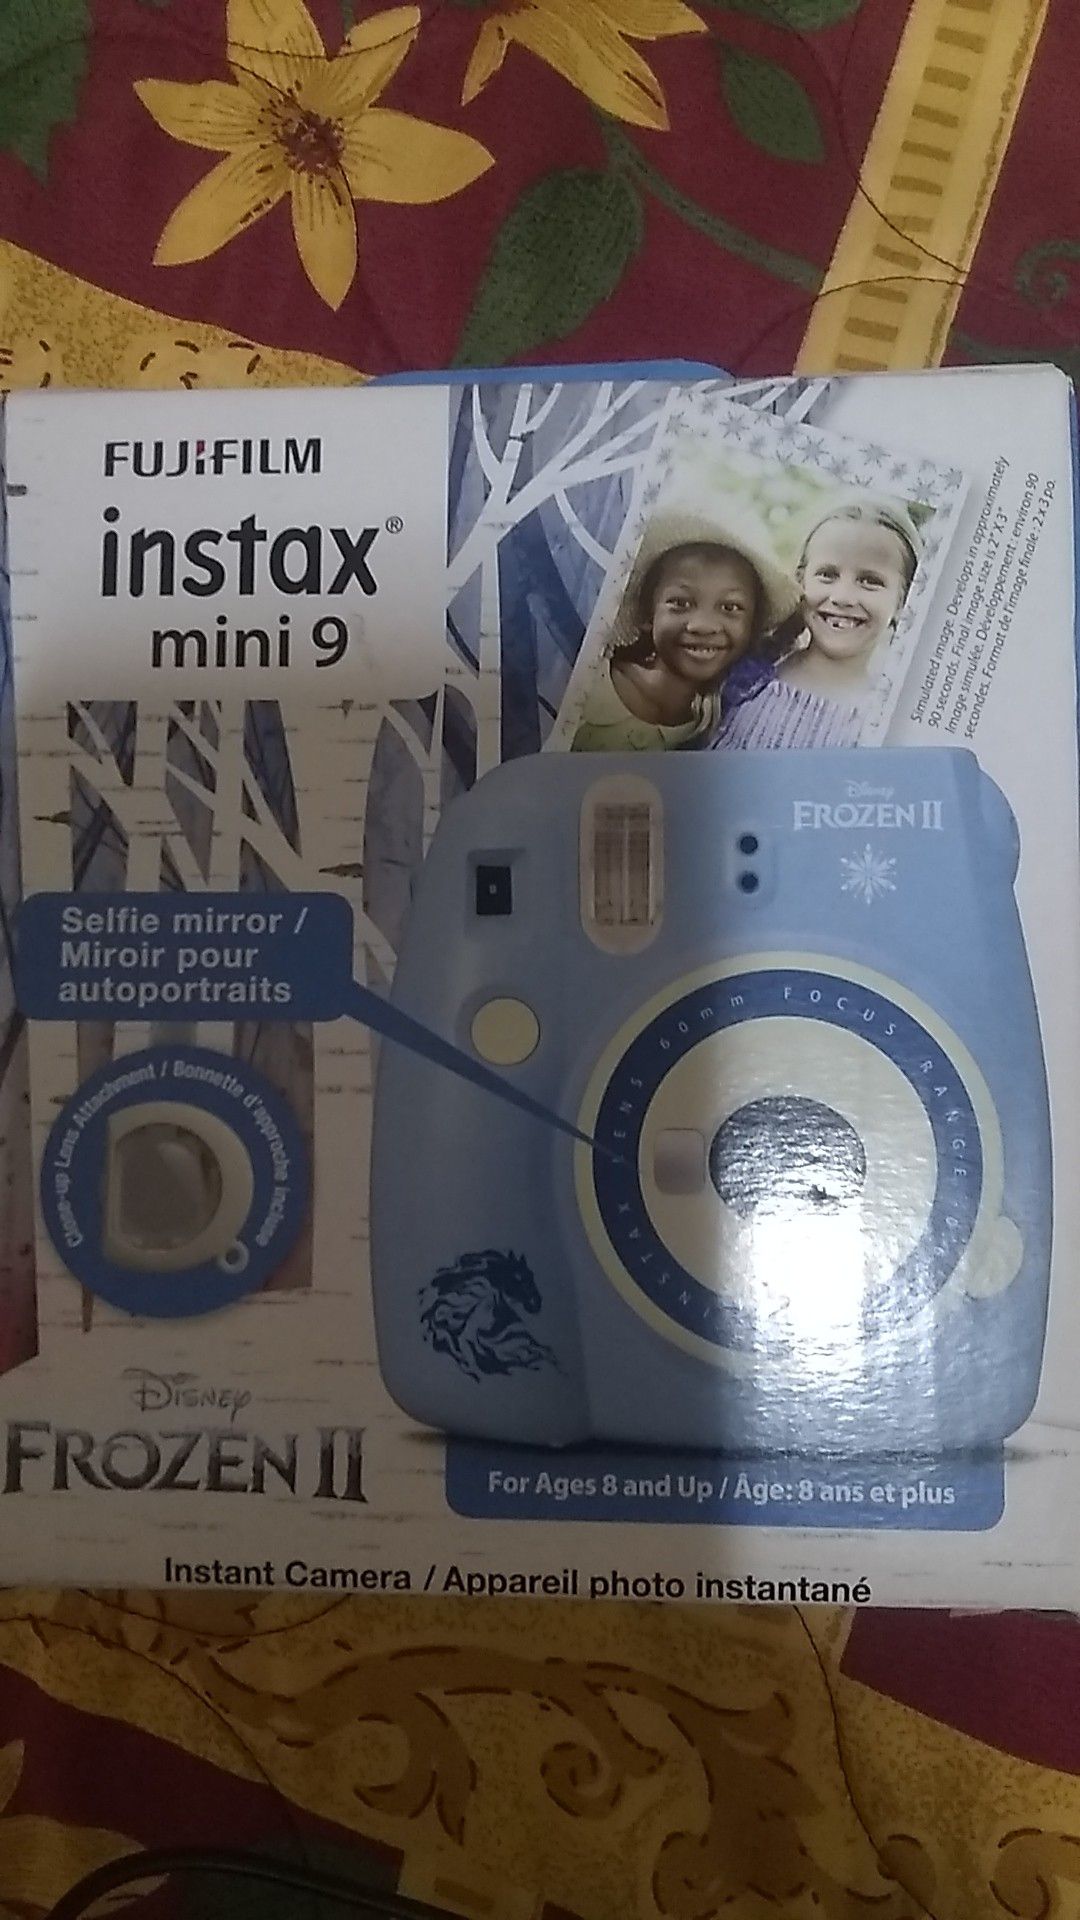 Fujifilm Instax mini 9 Frozen 2 edition